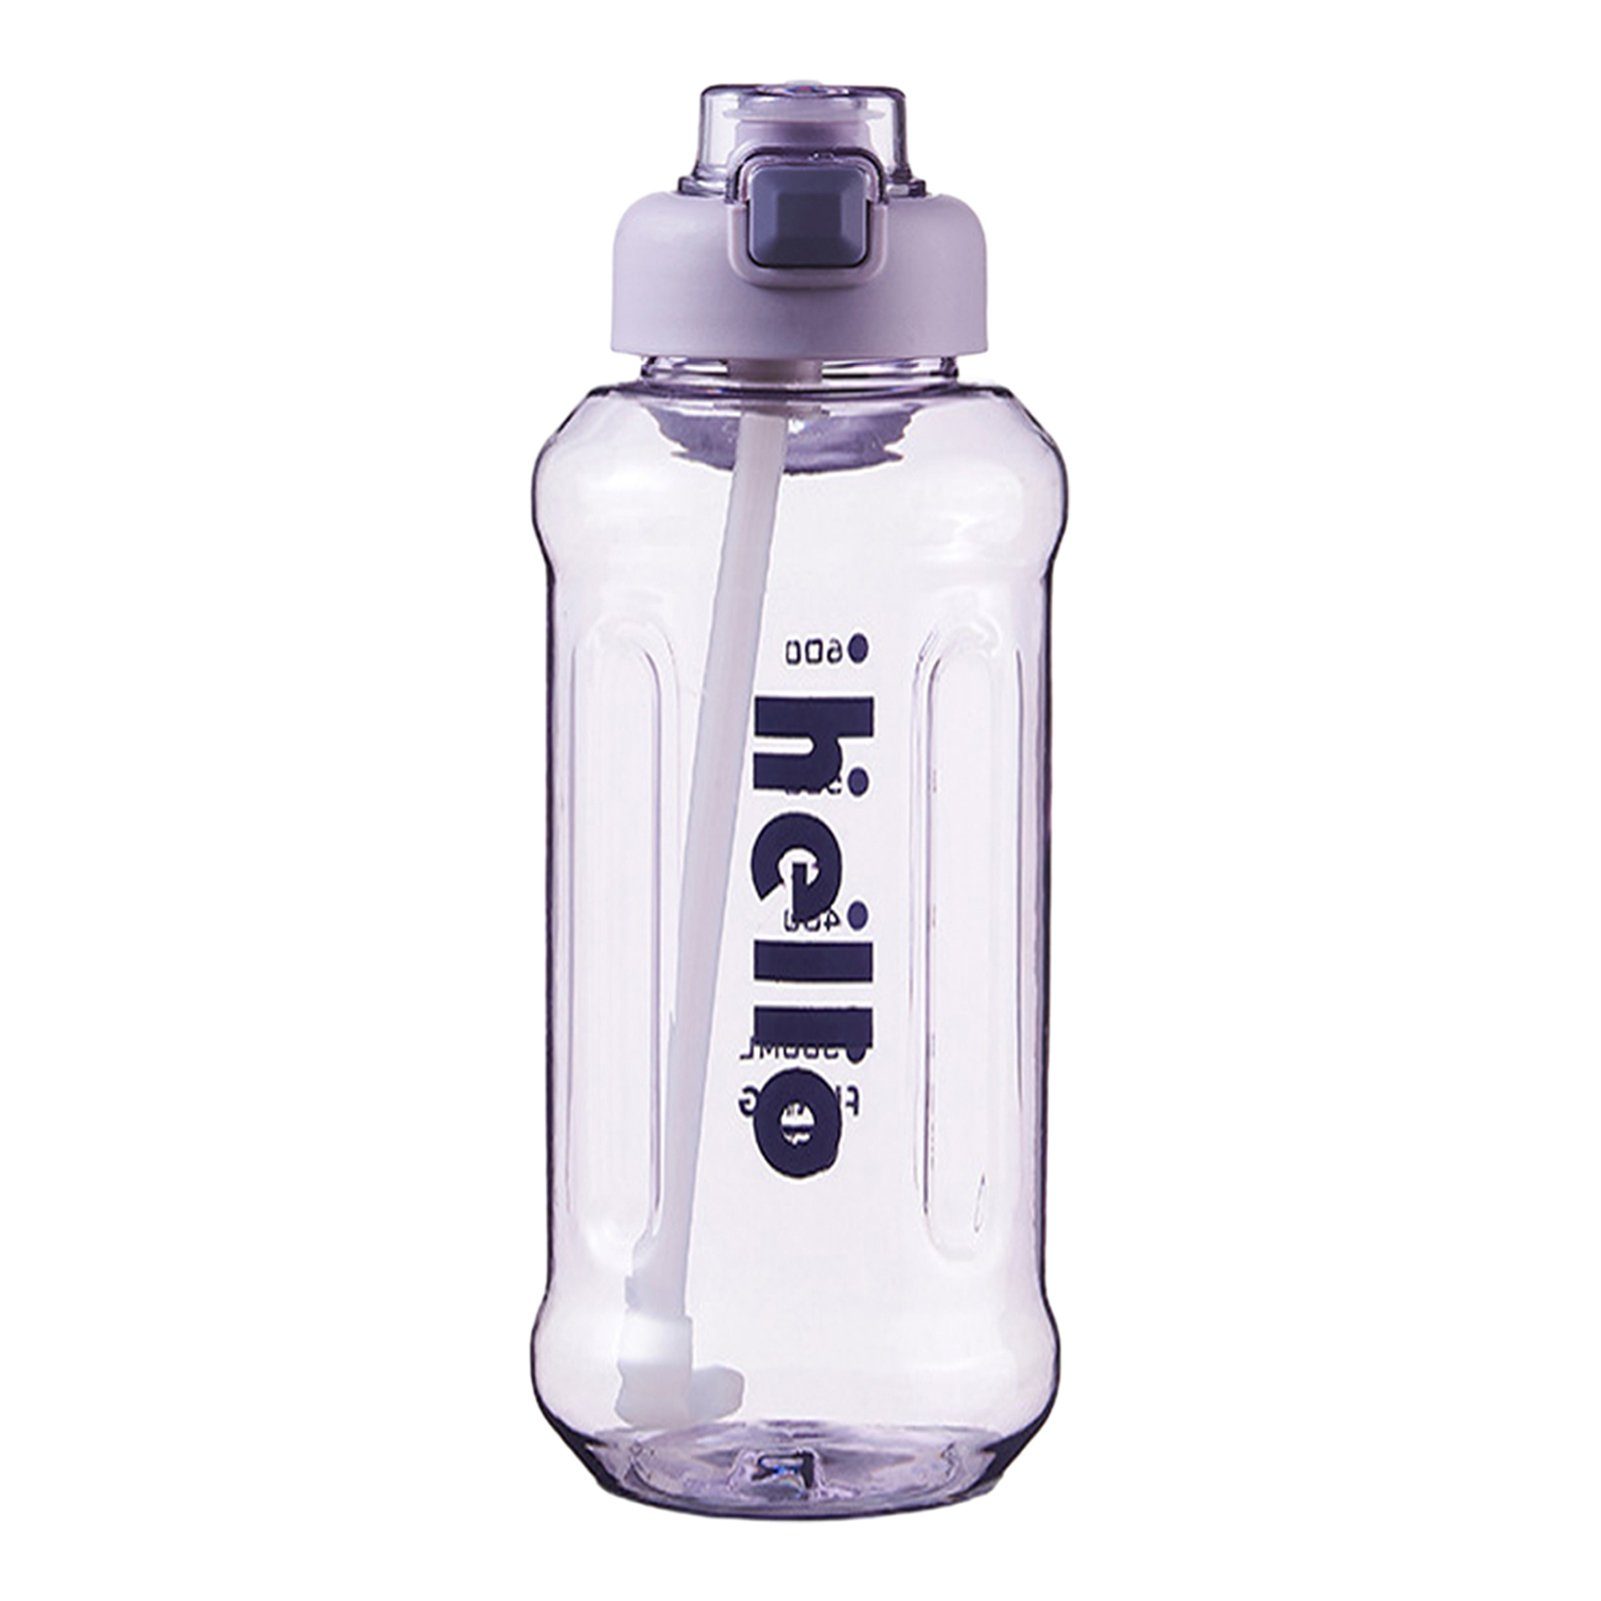 Blusmart Trinkflasche Tragbarer Stroh-Wasserbecher Mit Griff, Hoher Kapazität, Versiegelter, Trinkflasche purple 1300ml